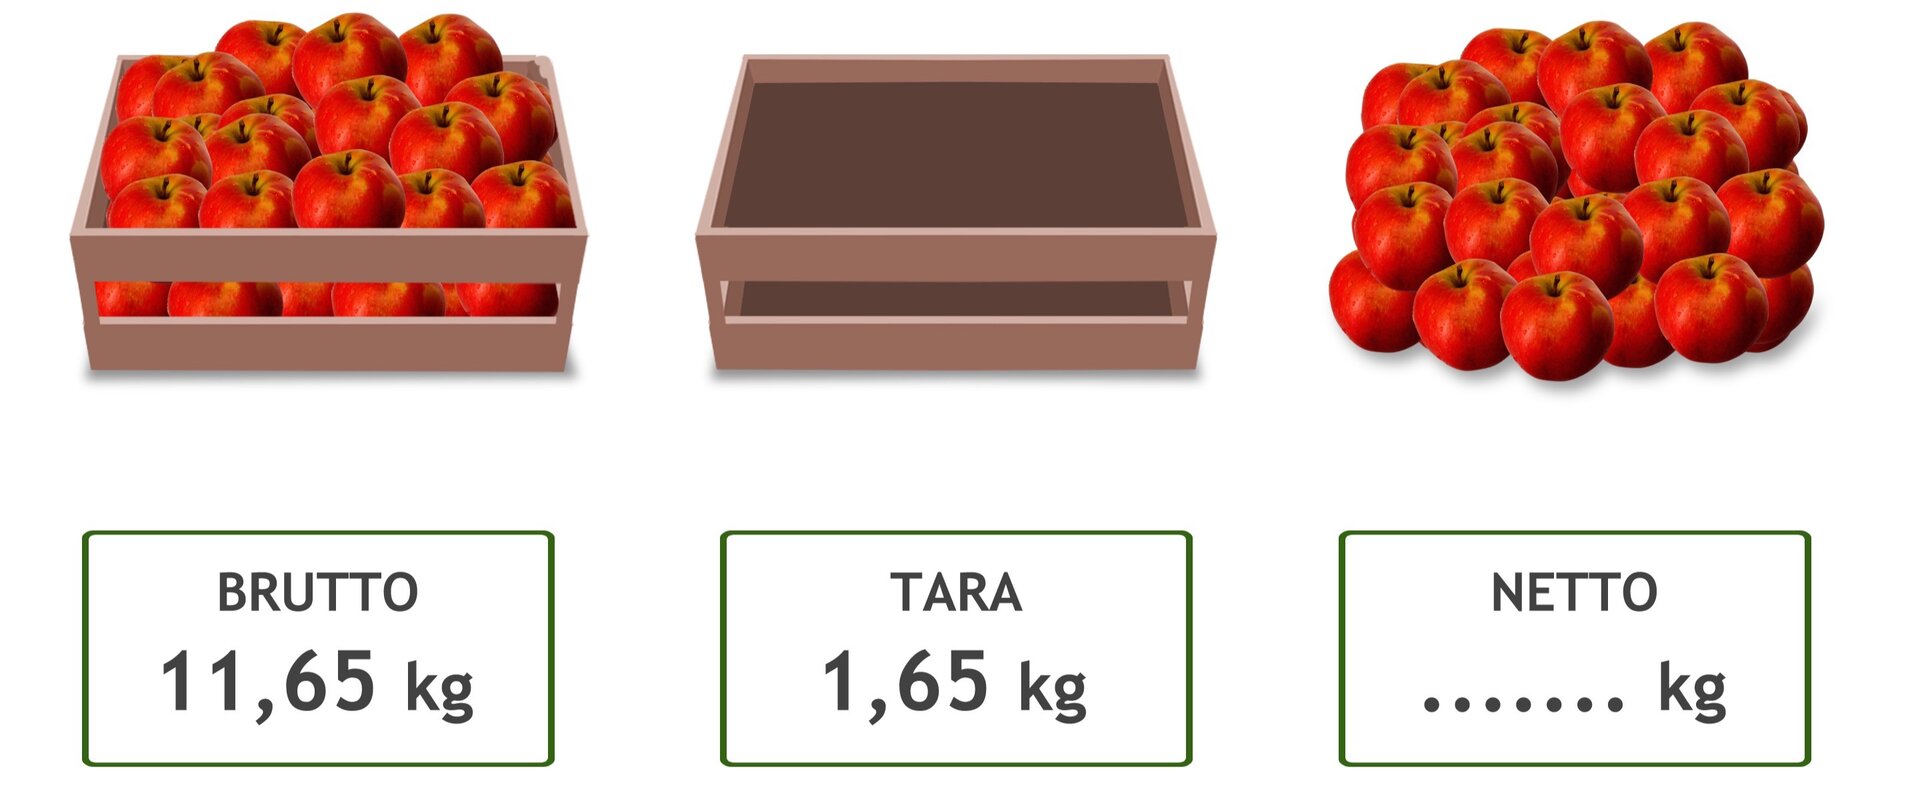 Rysunek skrzynki z jabłkami (brutto – 11,65 kg), pustej skrzynki (tara – 1,65 kg) i samych jabłek (netto - … kg).